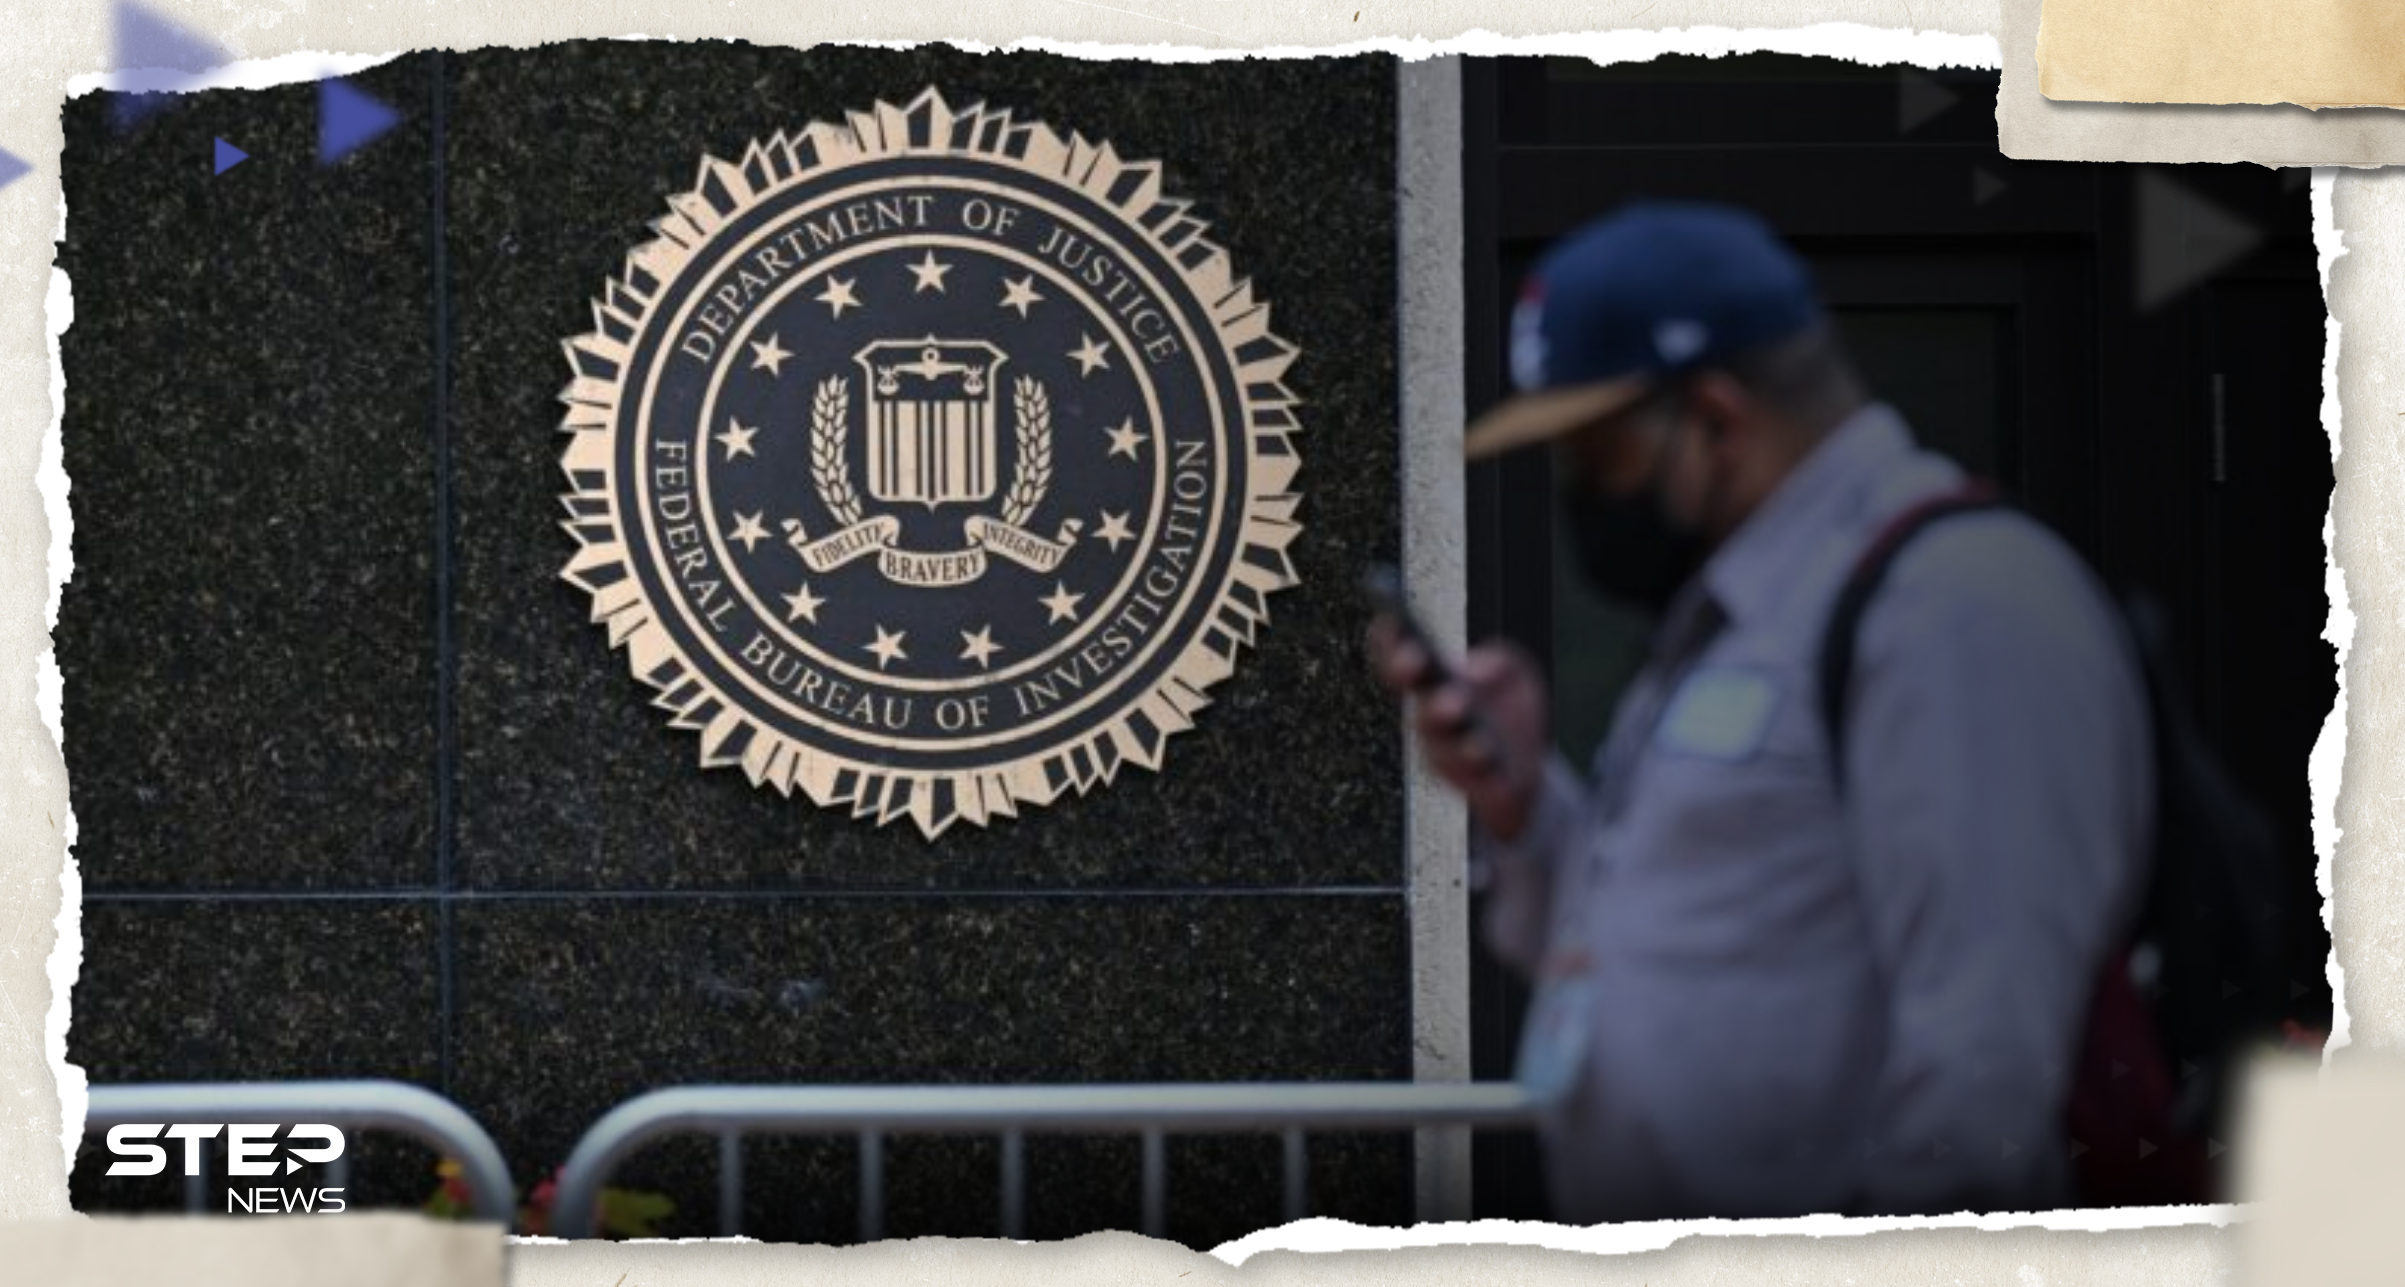 وثائق مسربة تكشف عن "فضيحة" وقع فيها الـ"FBI" تثير الجدل في الولايات المتحدة 